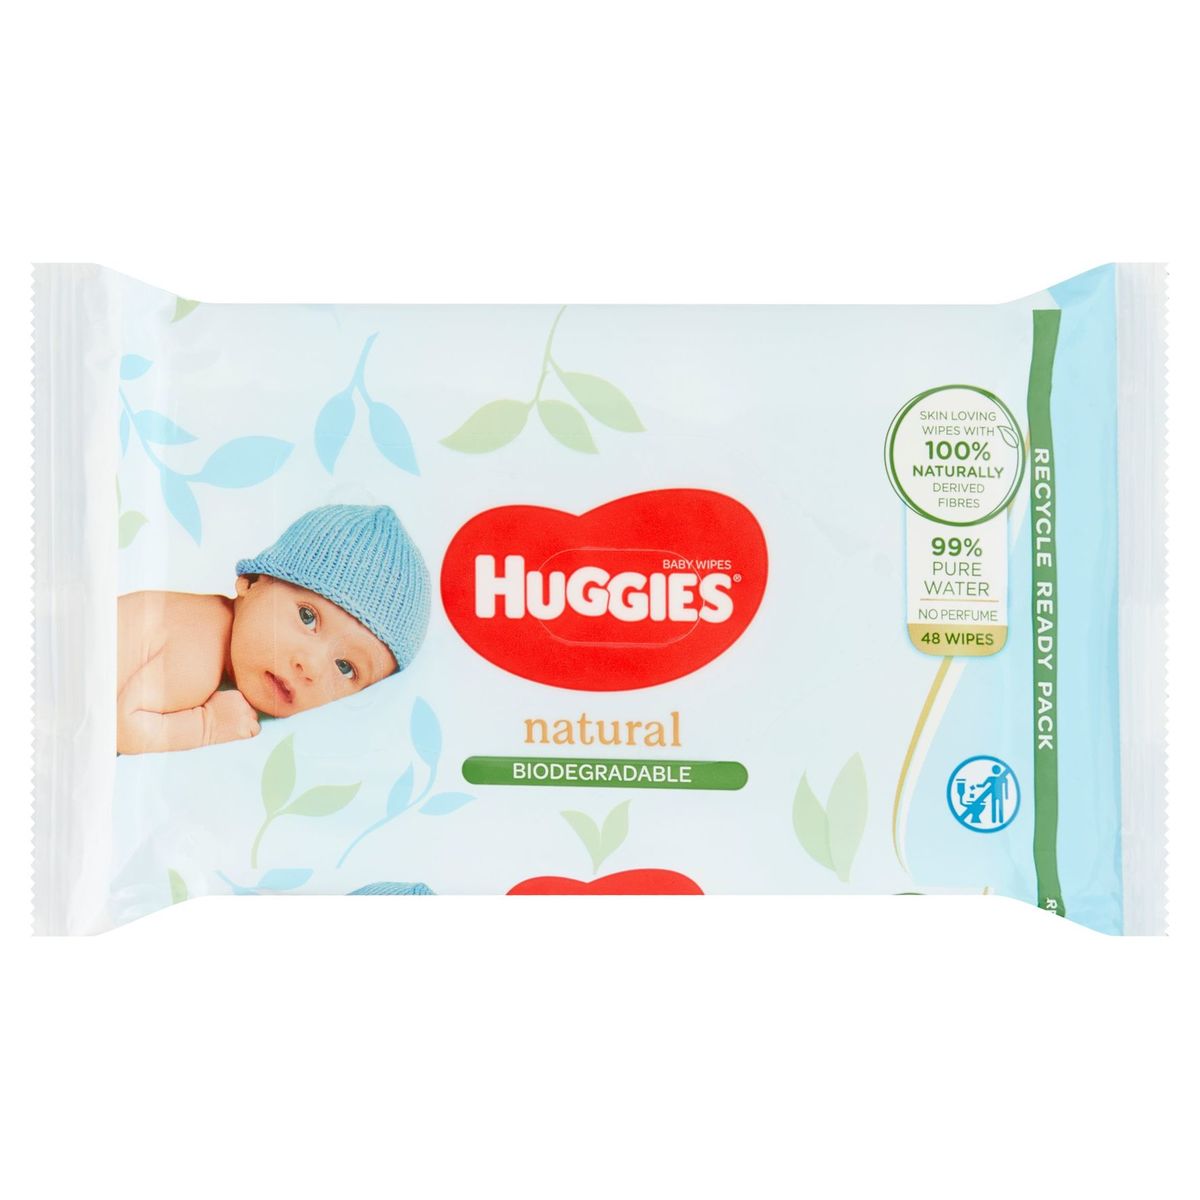 Huggies Natural Biodegradable Baby Wipes 48 Stuks